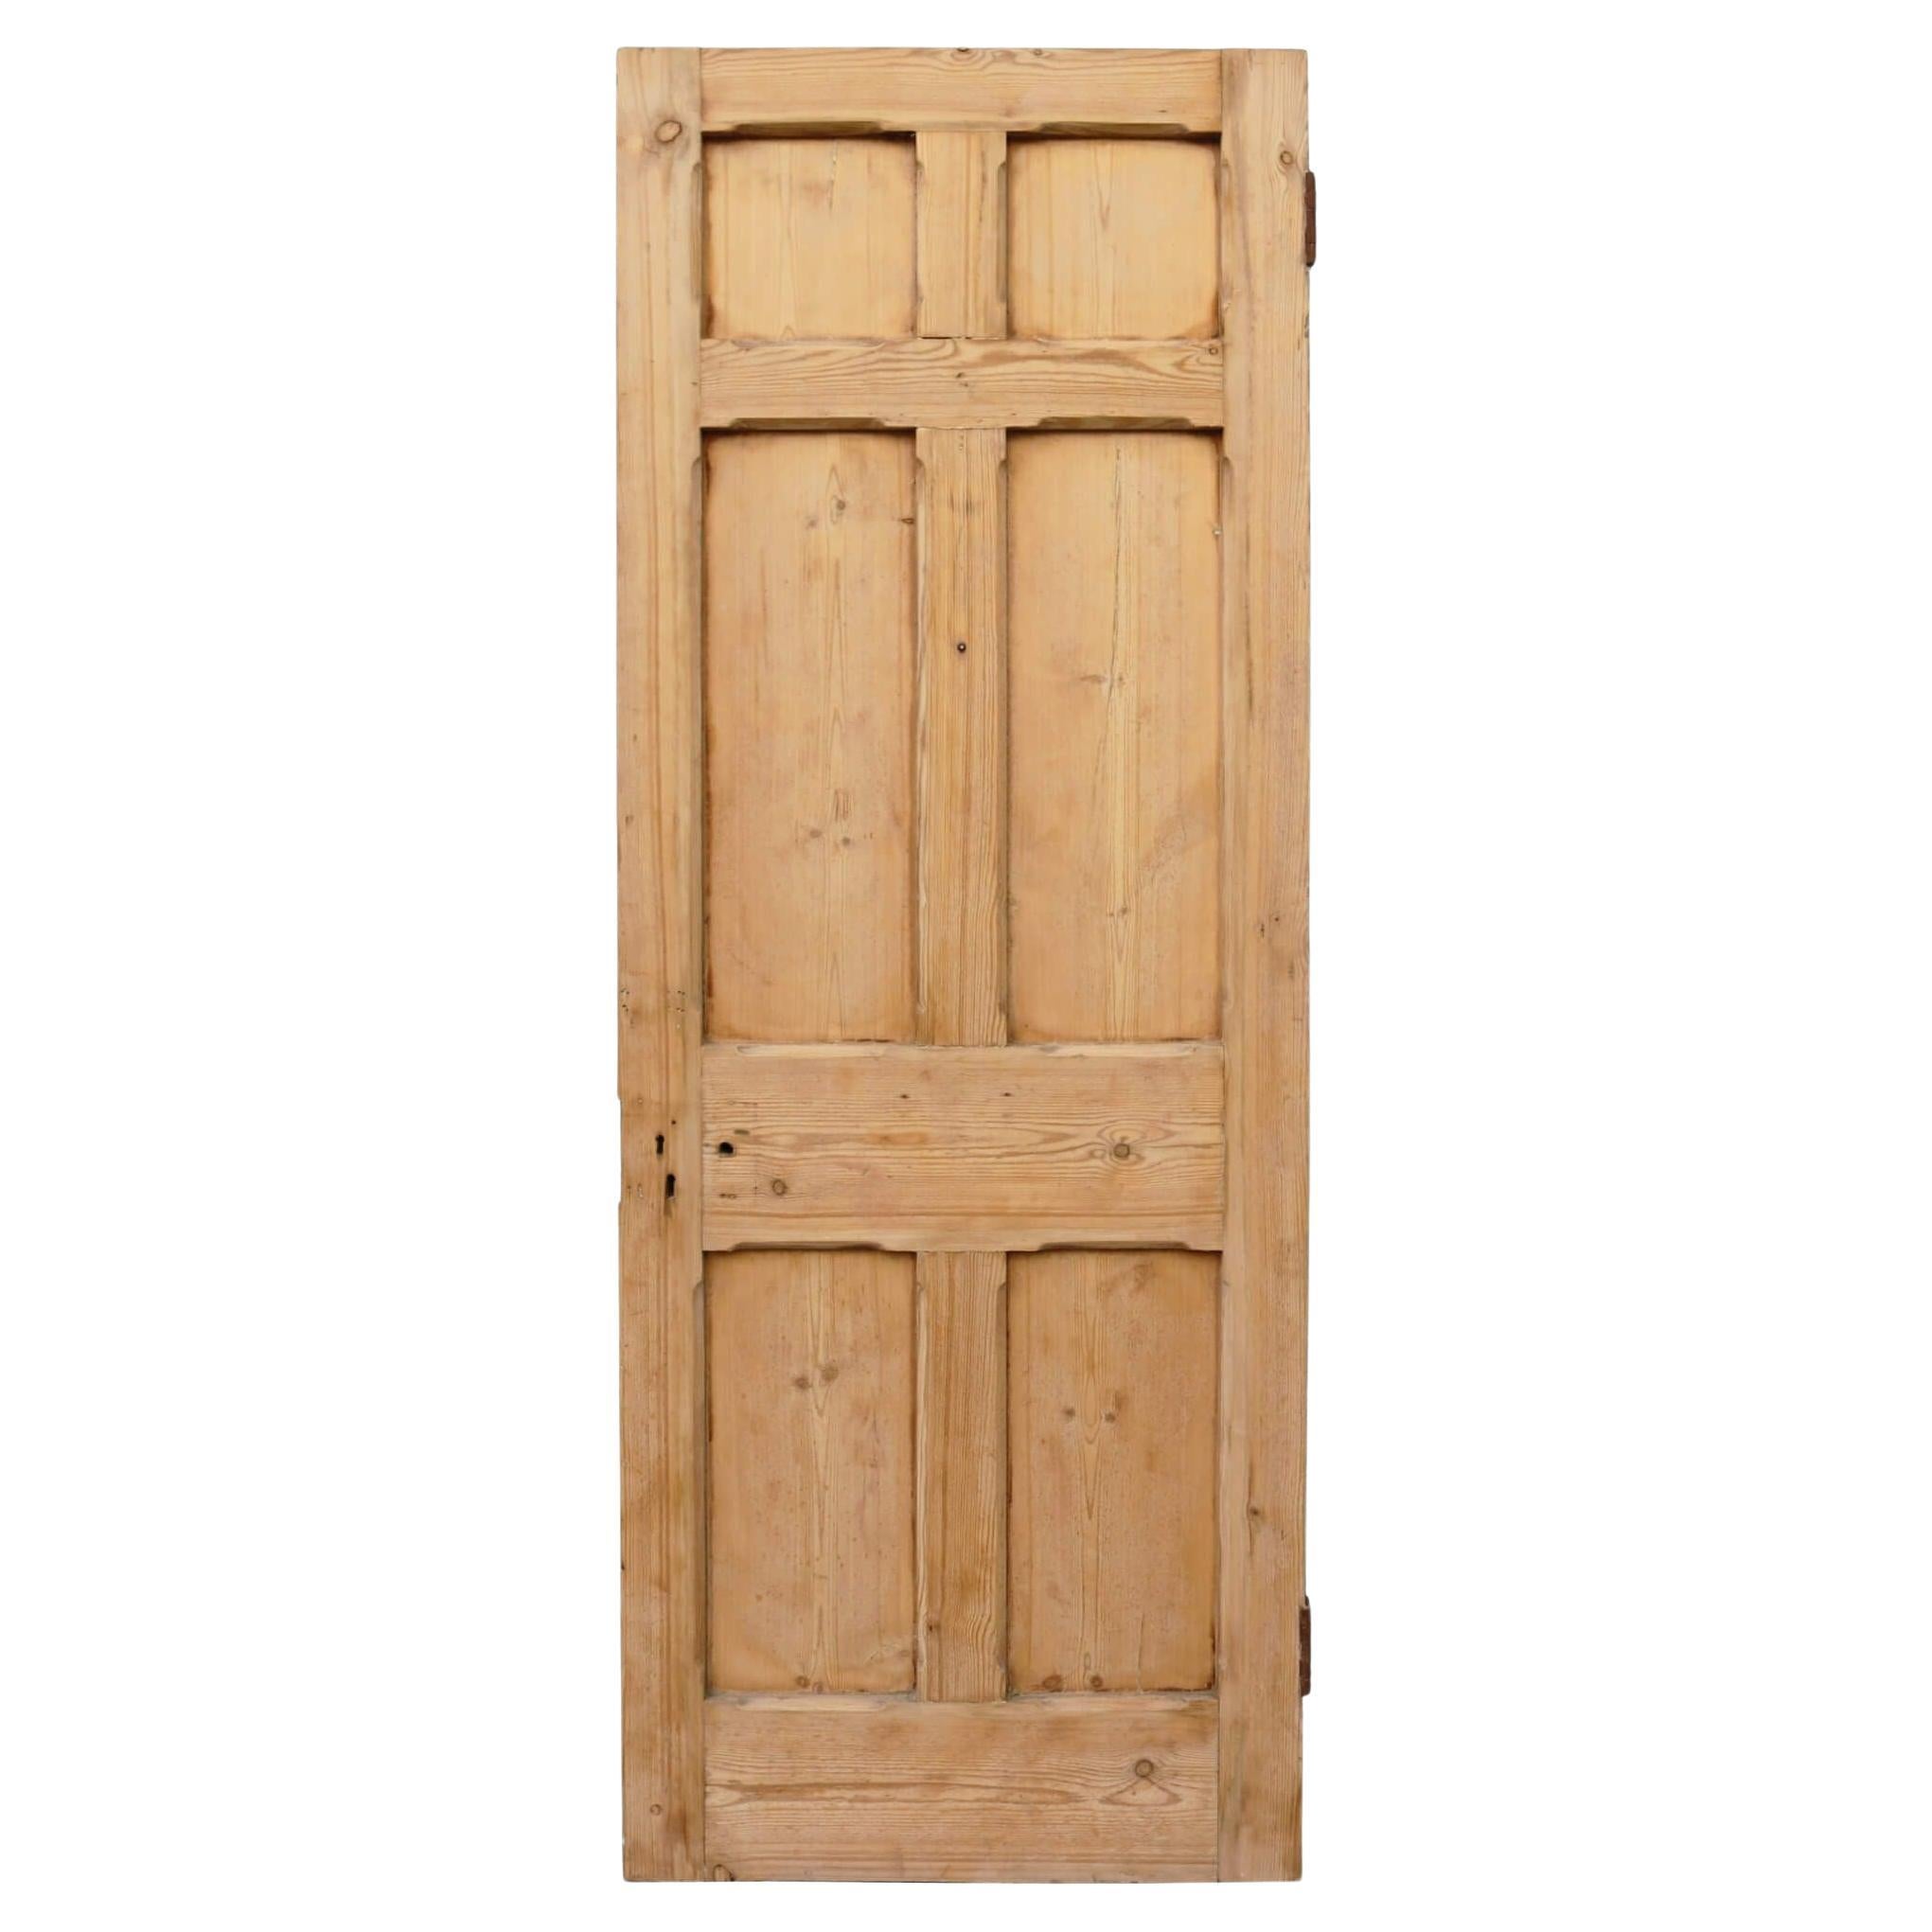 Aufgearbeitete 6-teilige Tür aus viktorianischer Kiefer für den Innen- oder Außenbereich